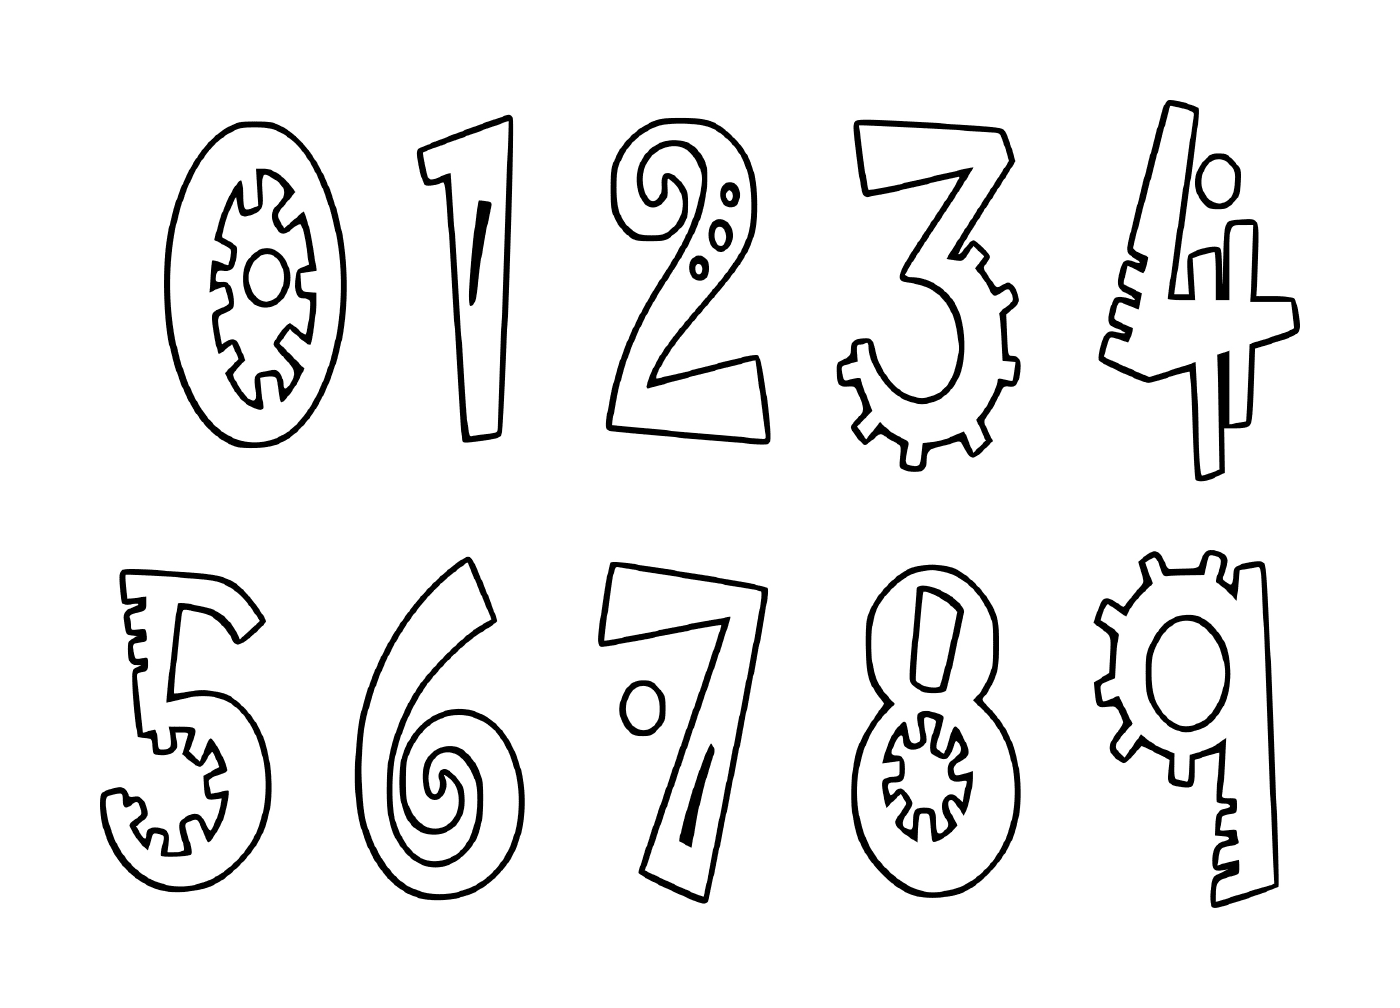  Conjunto de dígitos de cero a nueve dibujados en tinta negra 